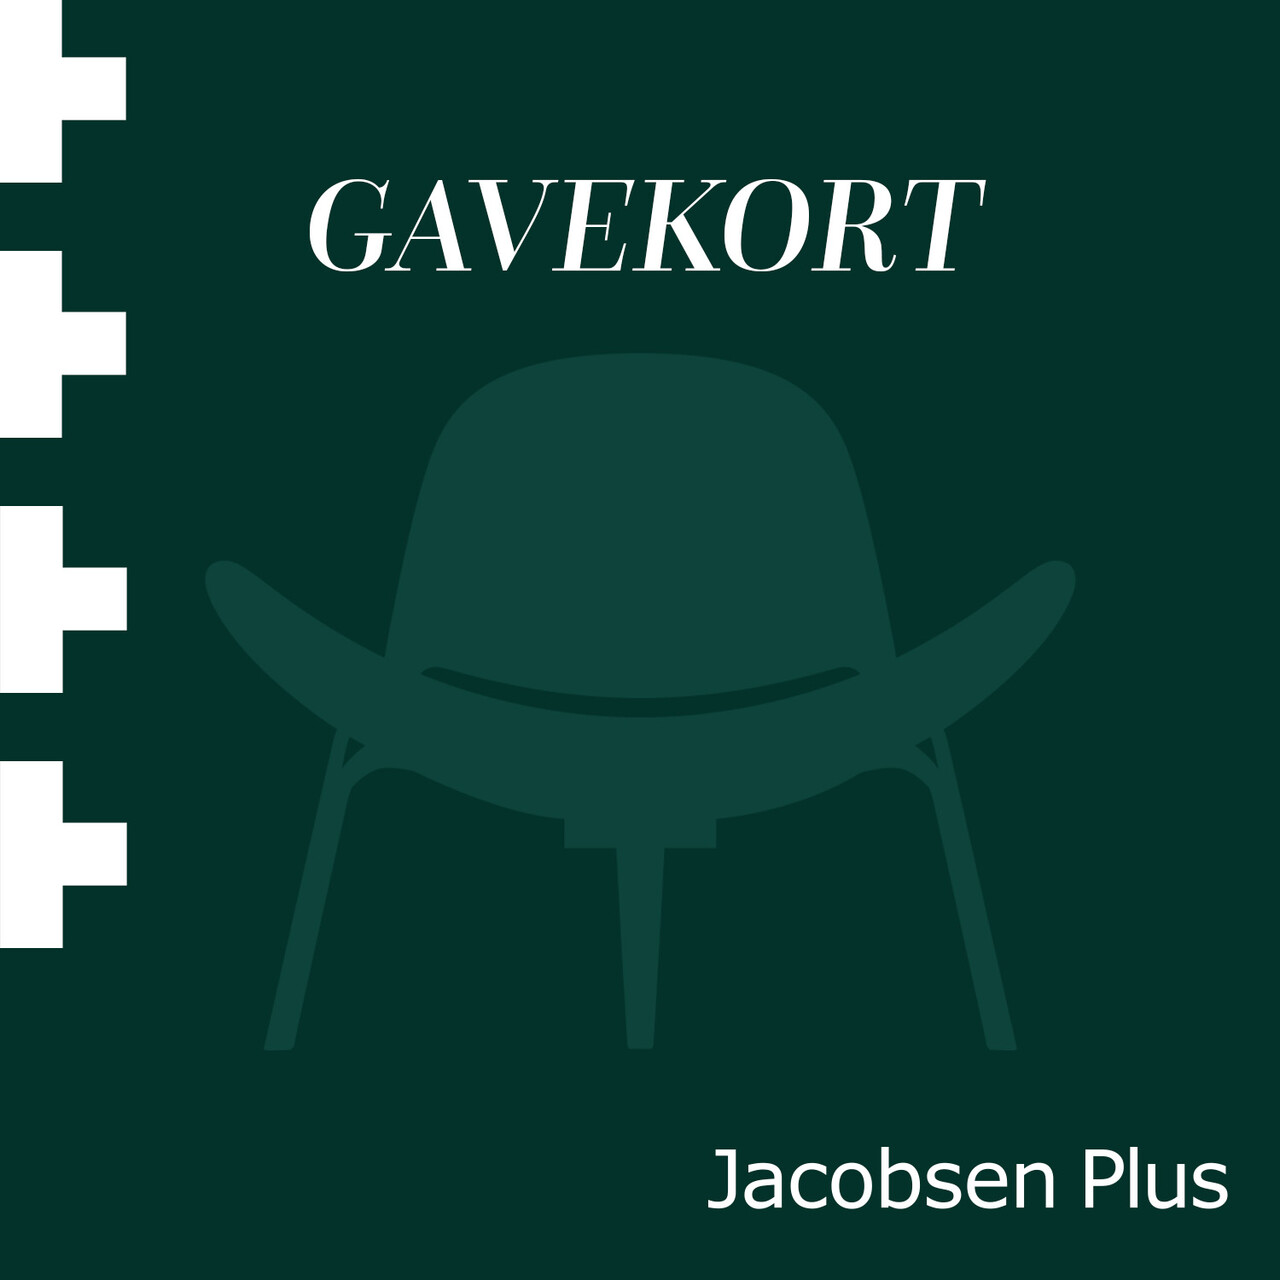 Elektronisk gavekort til Jacobsen Plus (500)